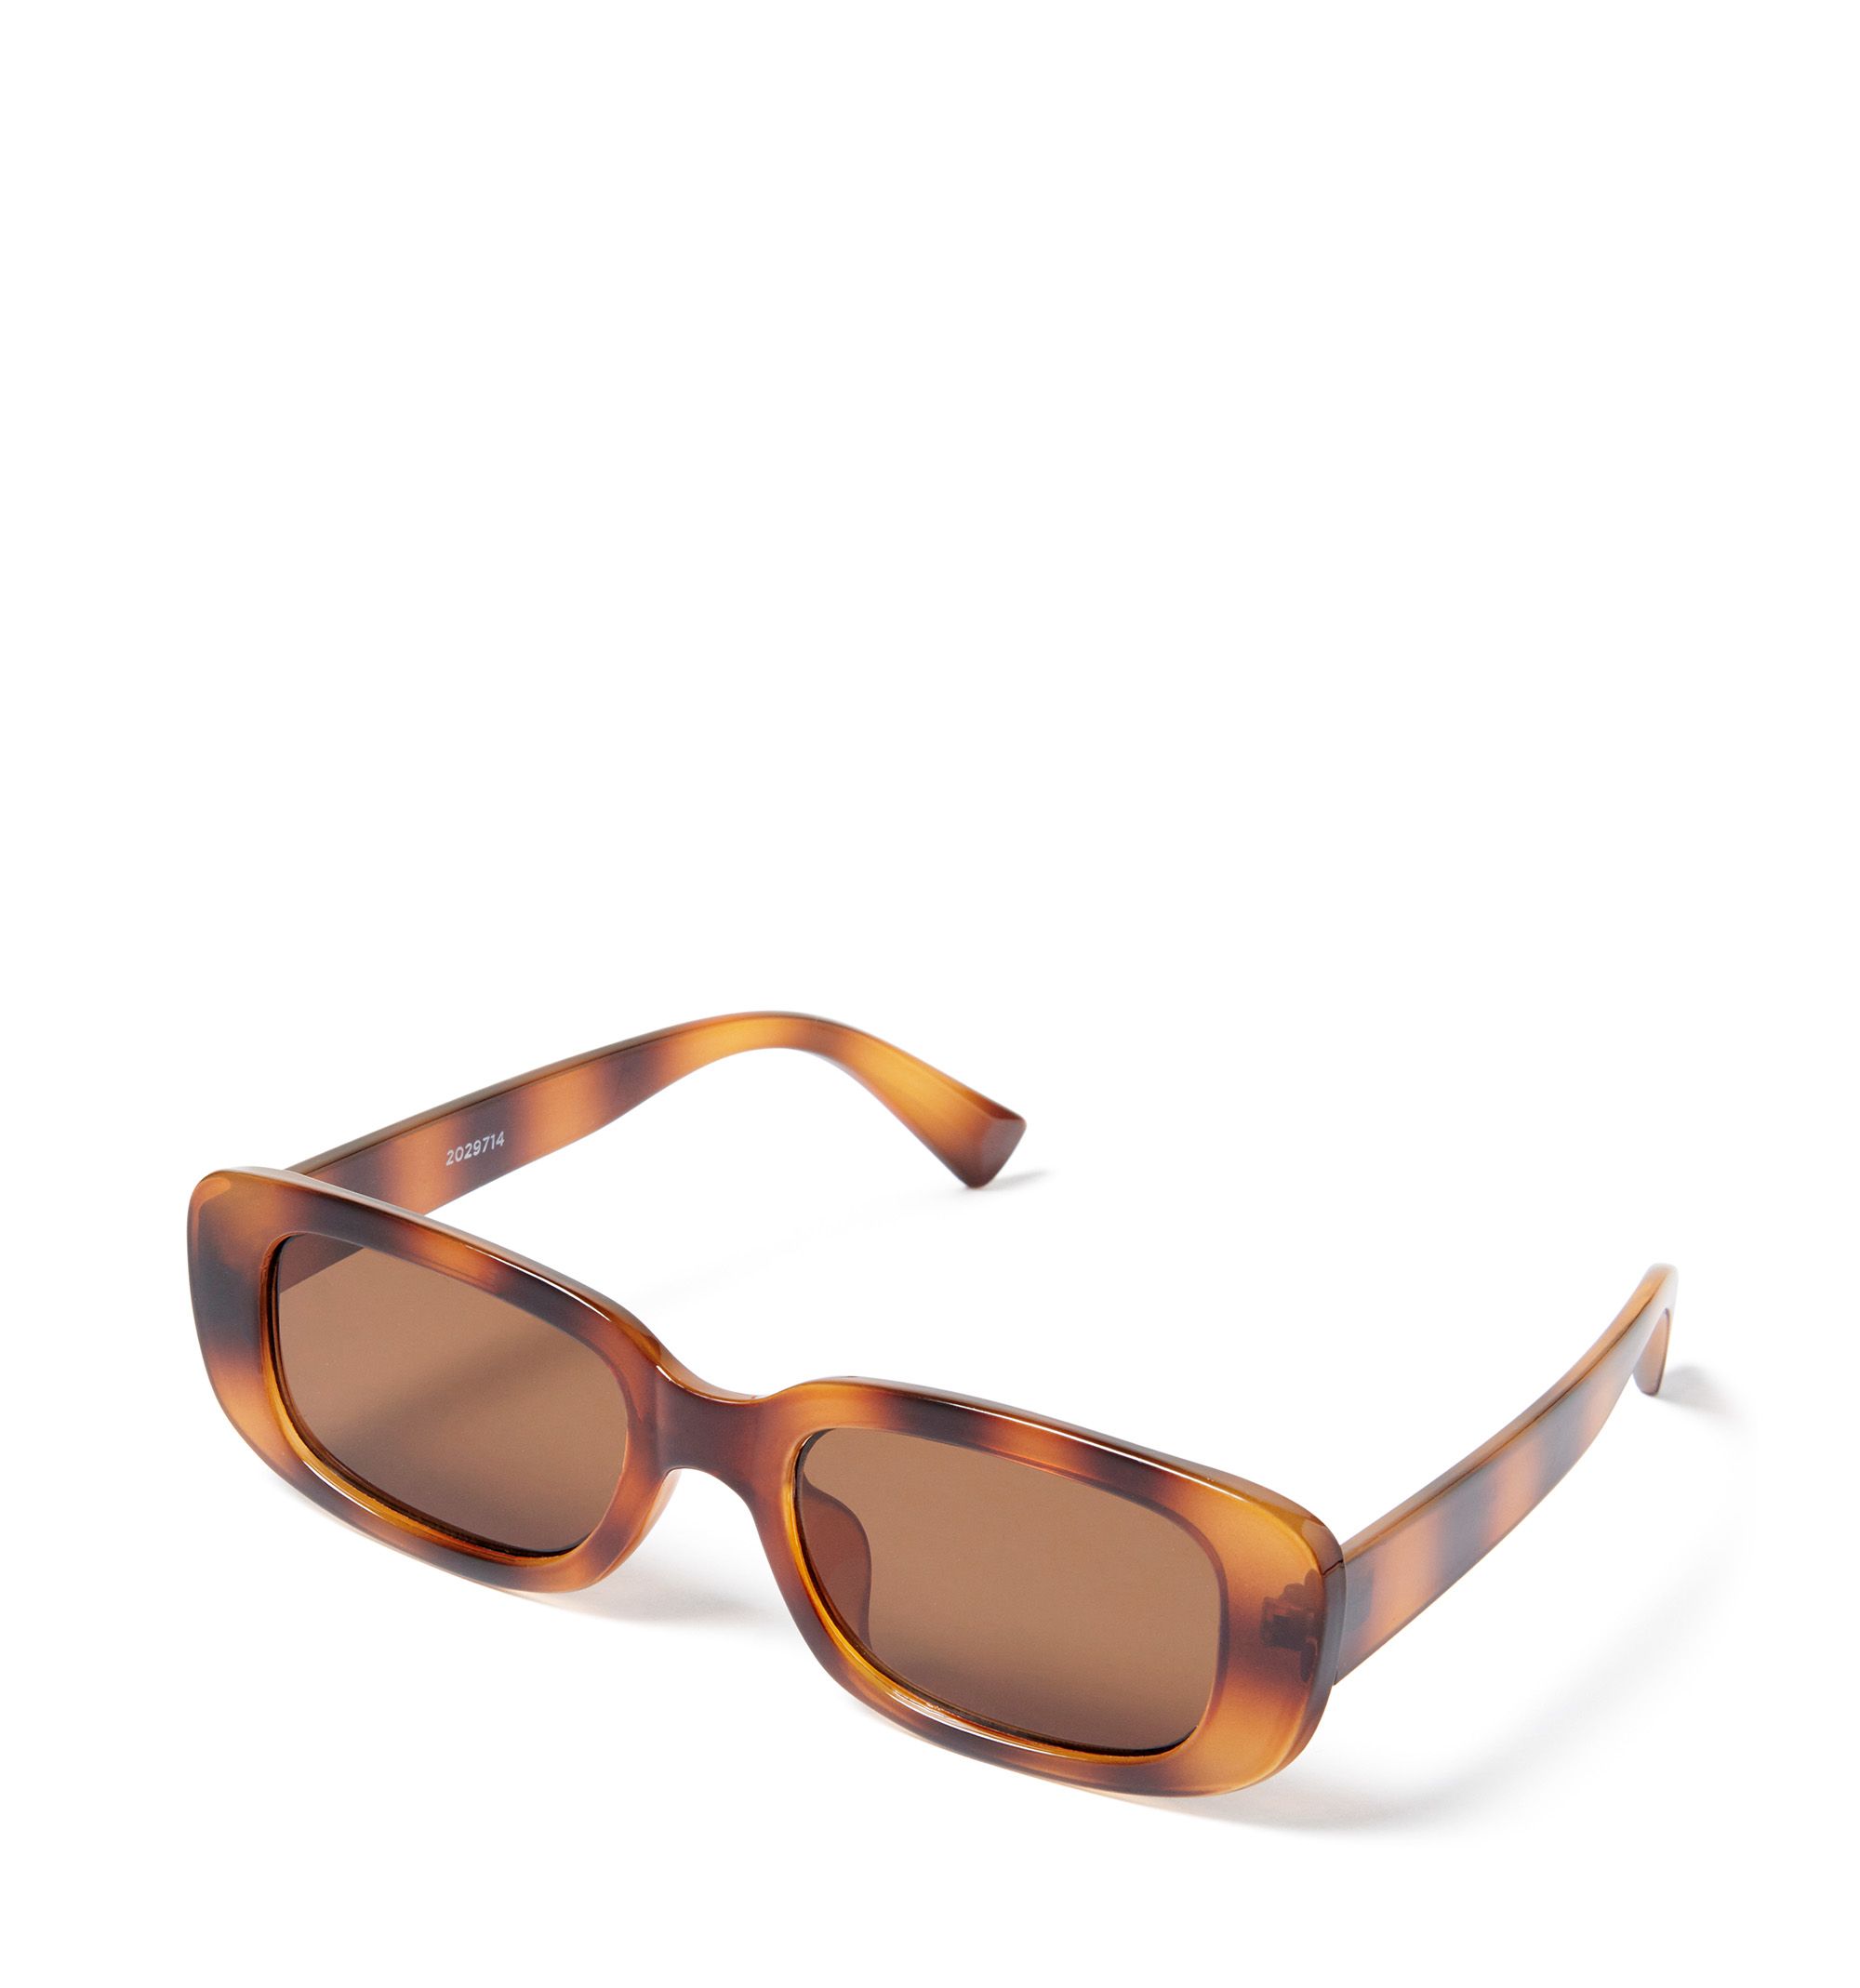 Tom Ford - Lara Sunglasses - Square Acetate Sunglasses - Grey Silver -  FT0573 - Sunglasses - Tom Ford Eyewear - Avvenice